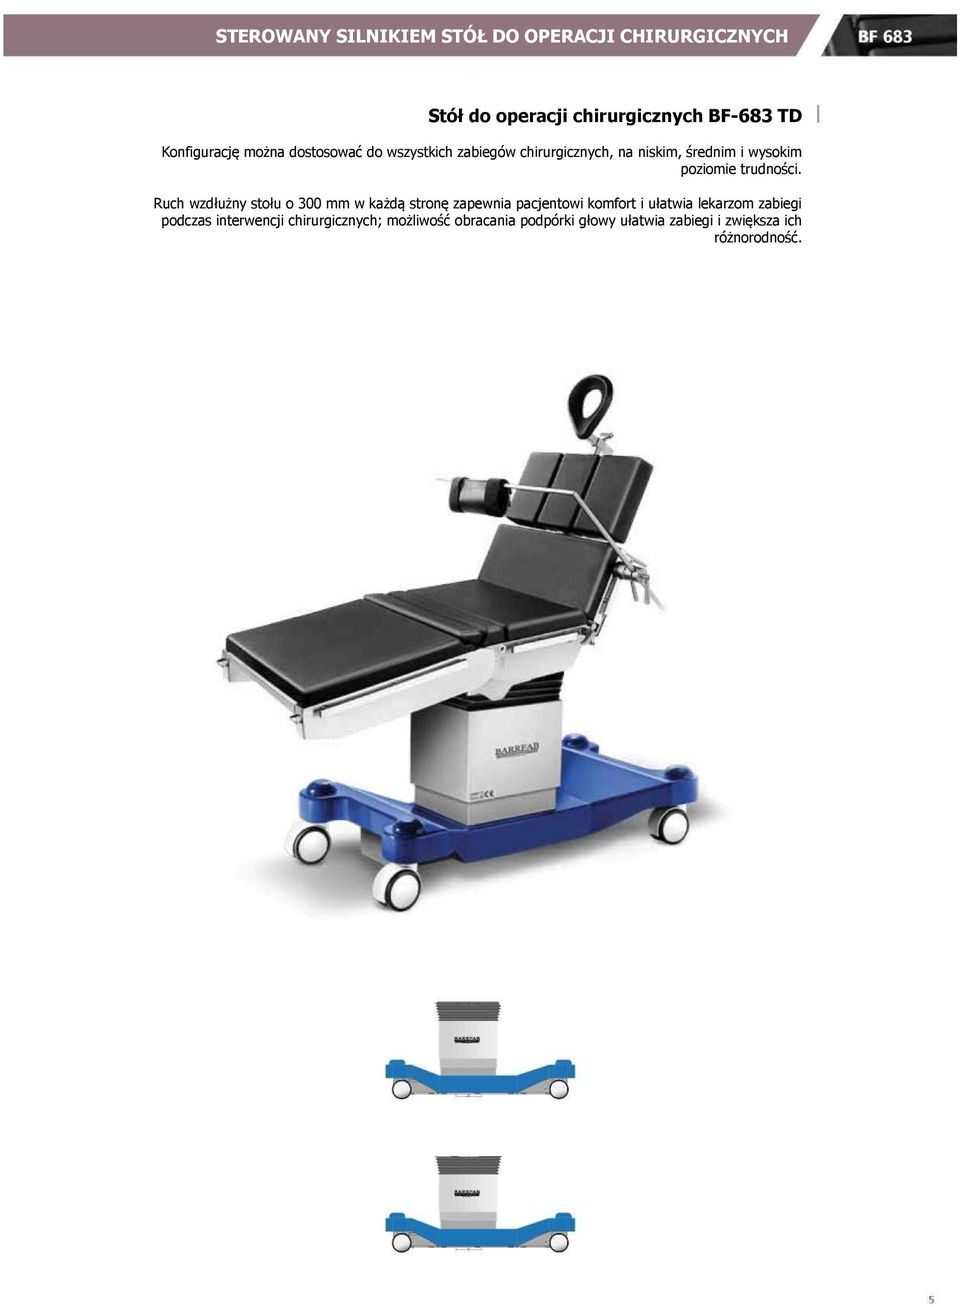 Ruch wzdłużny stołu o 300 mm w każdą stronę zapewnia pacjentowi komfort i ułatwia lekarzom zabiegi podczas